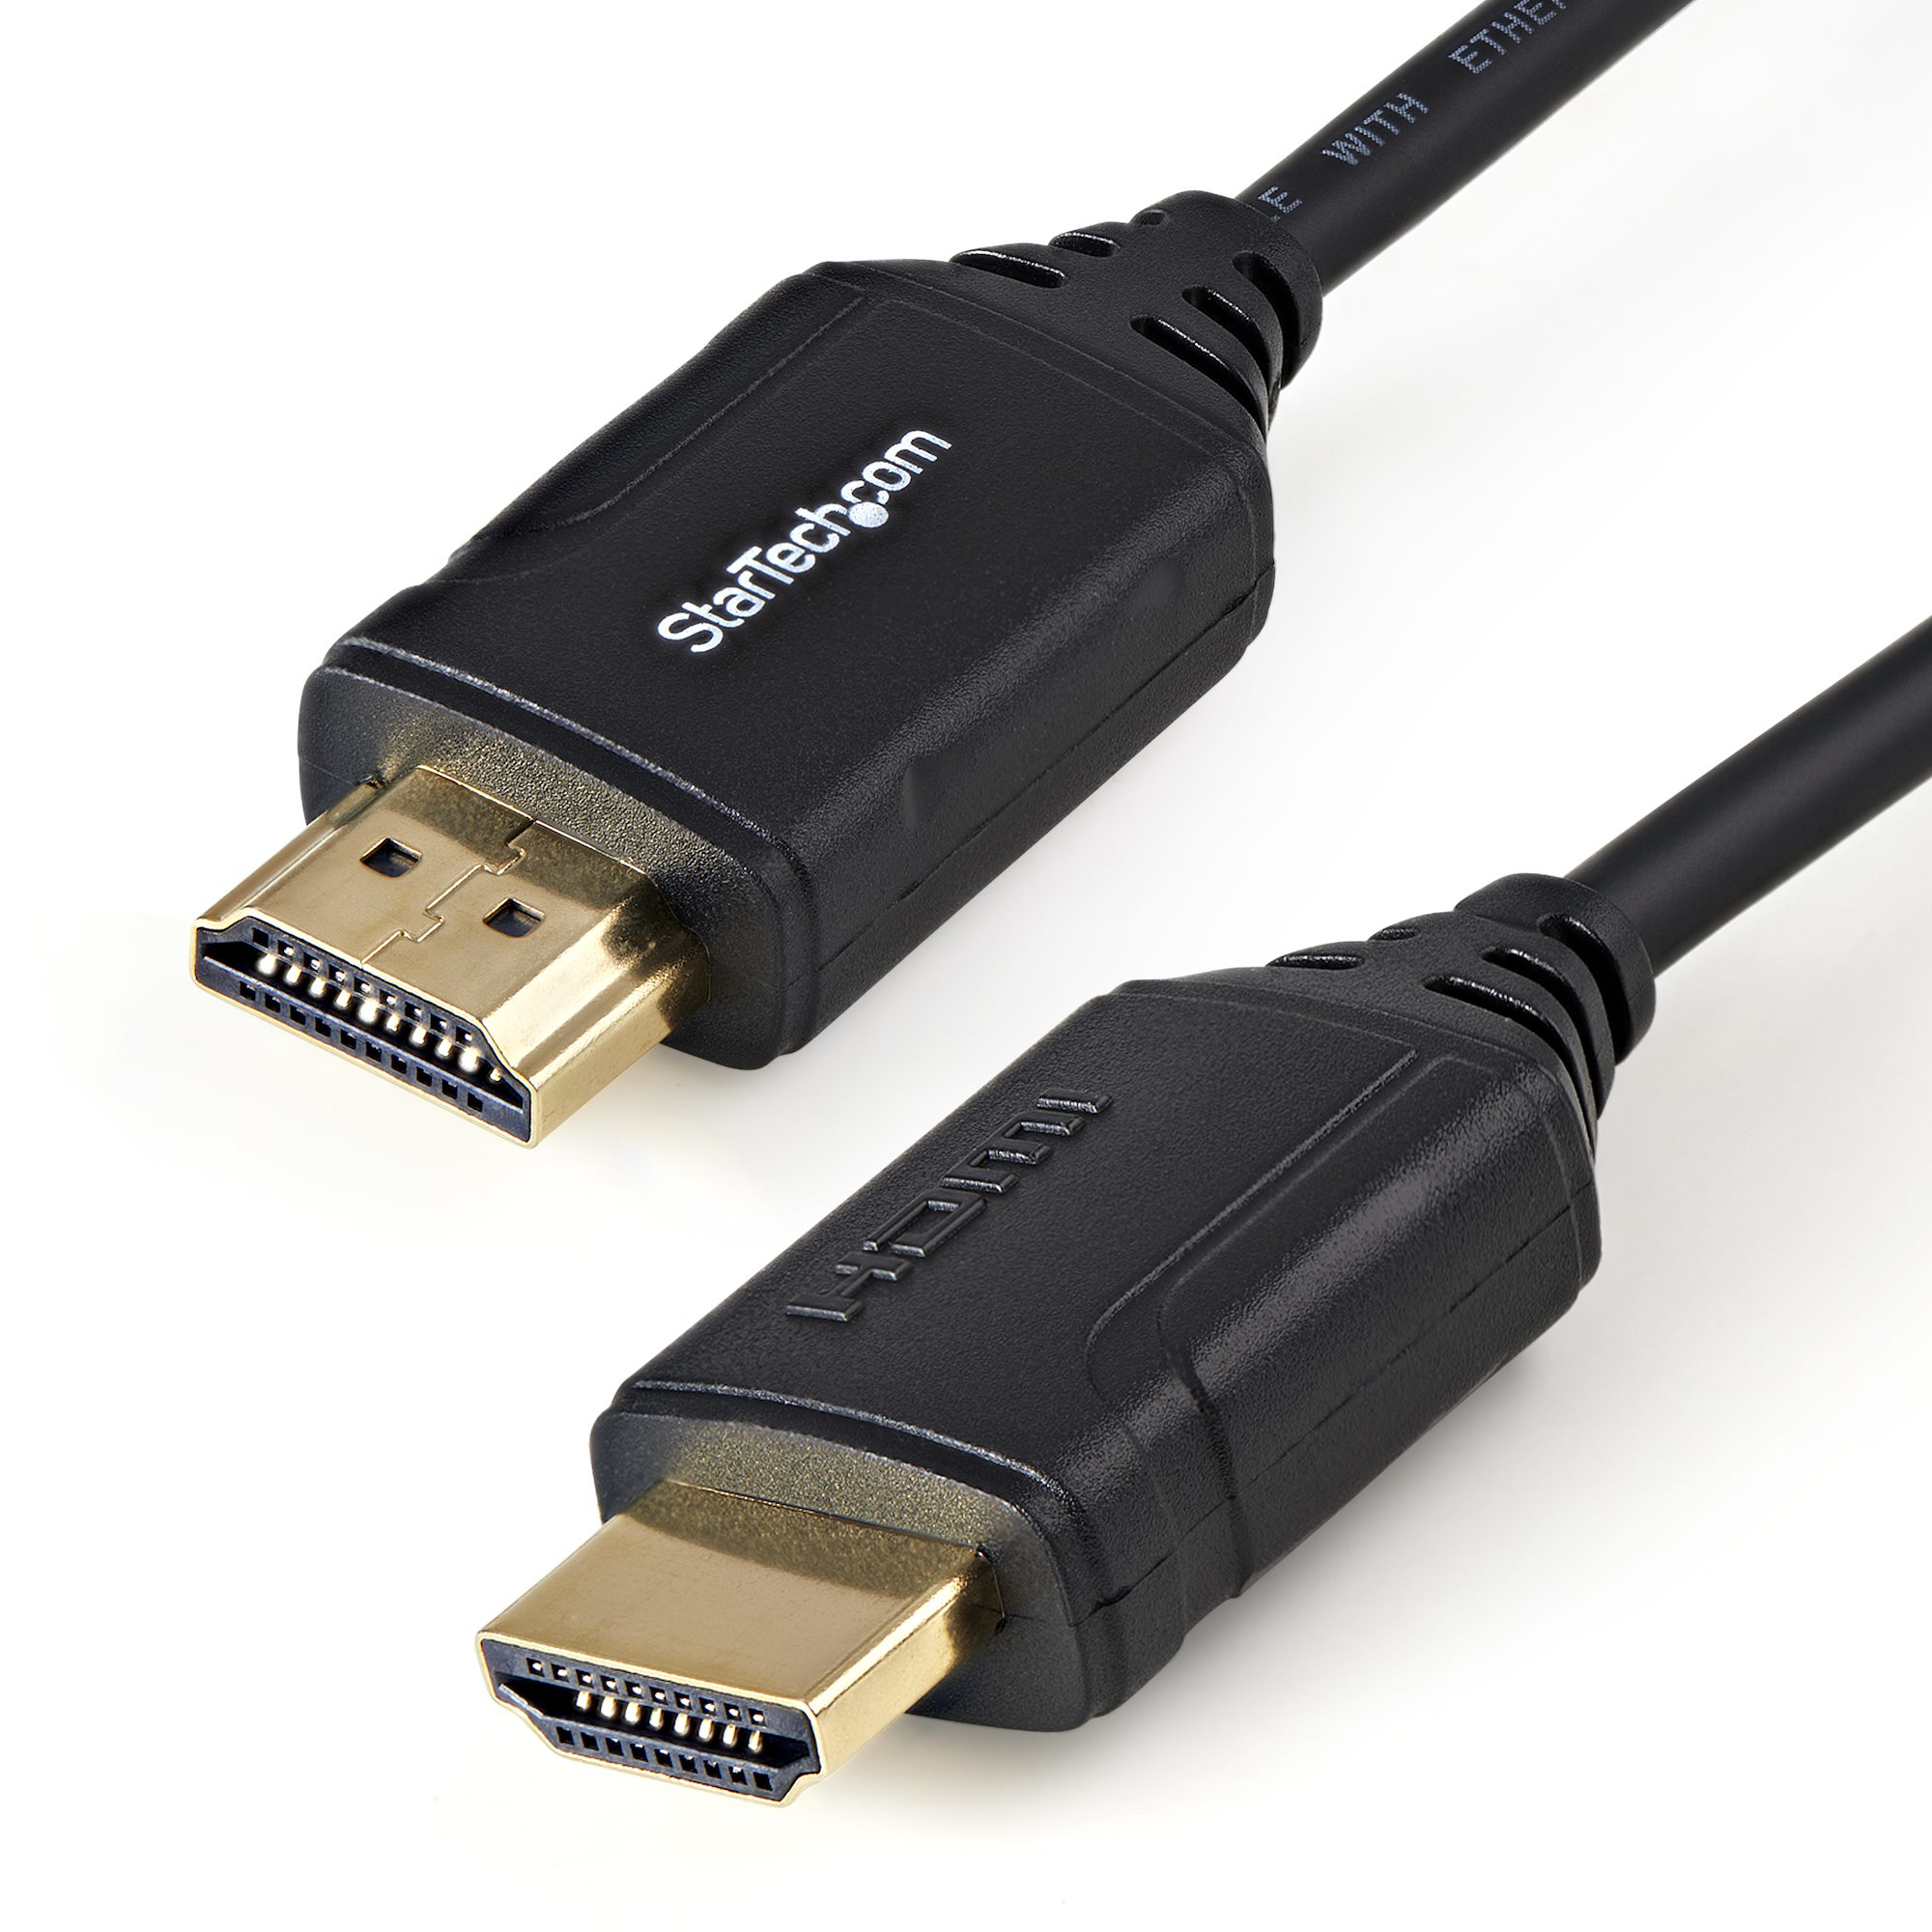 StarTech.com Premium High Speed HDMI Kabel mit Ethernet - 4K 60Hz - 0,5m - 0,5 m - HDMI Typ A (Standard) - HDMI Typ A (Standard) - Audio Return Channel (ARC) - Schwarz